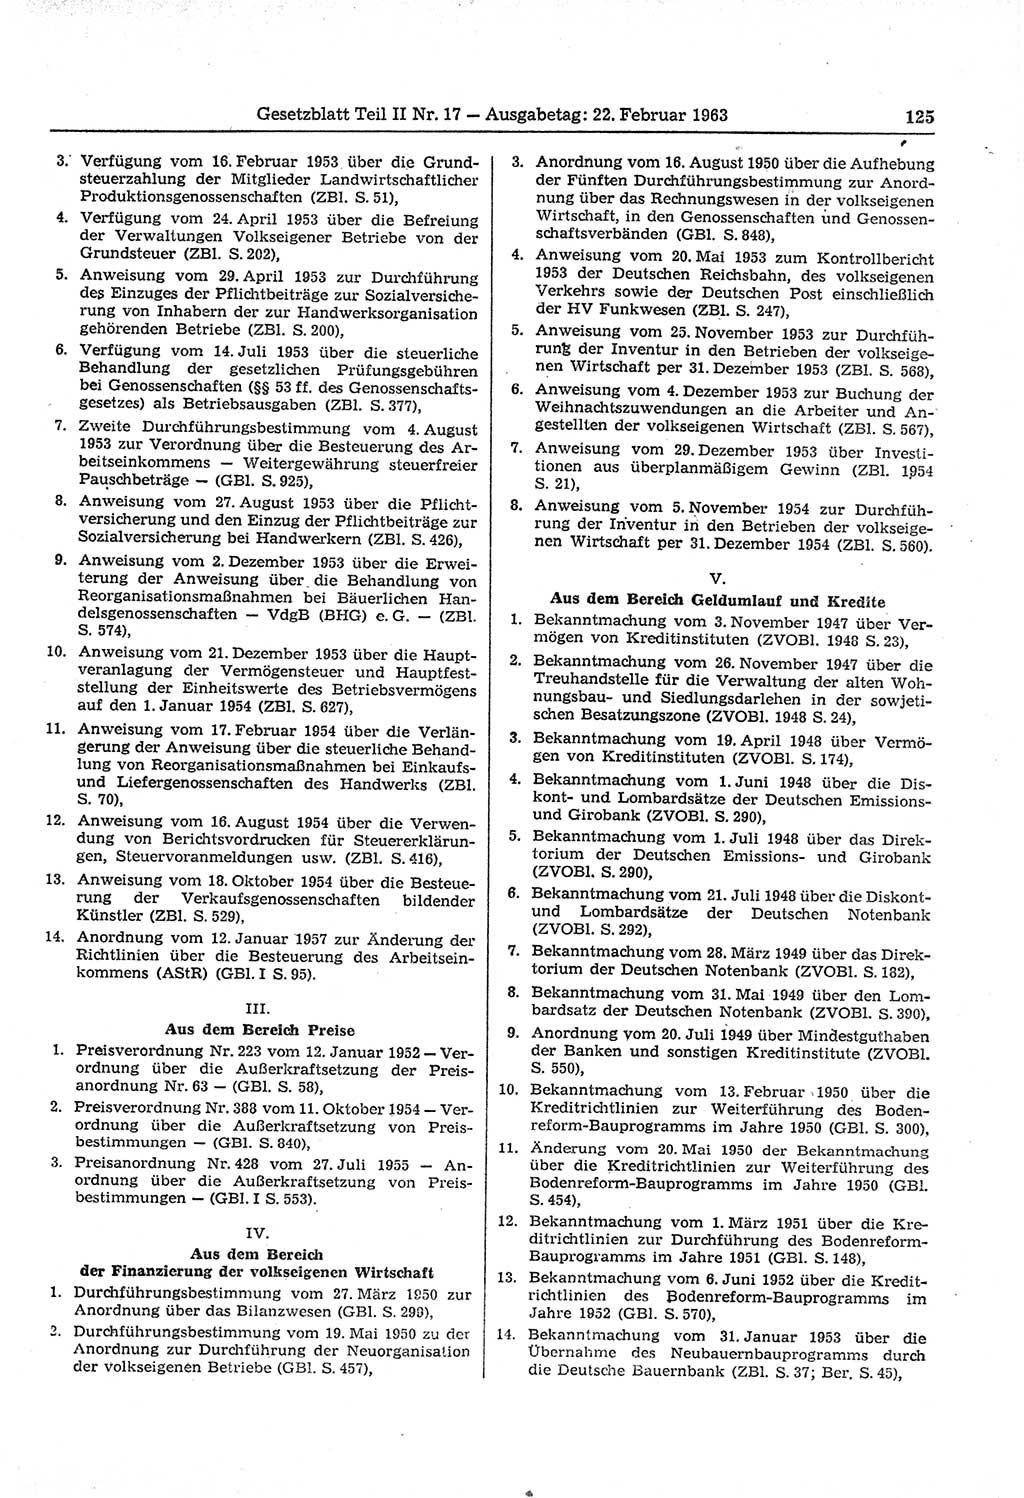 Gesetzblatt (GBl.) der Deutschen Demokratischen Republik (DDR) Teil ⅠⅠ 1963, Seite 125 (GBl. DDR ⅠⅠ 1963, S. 125)